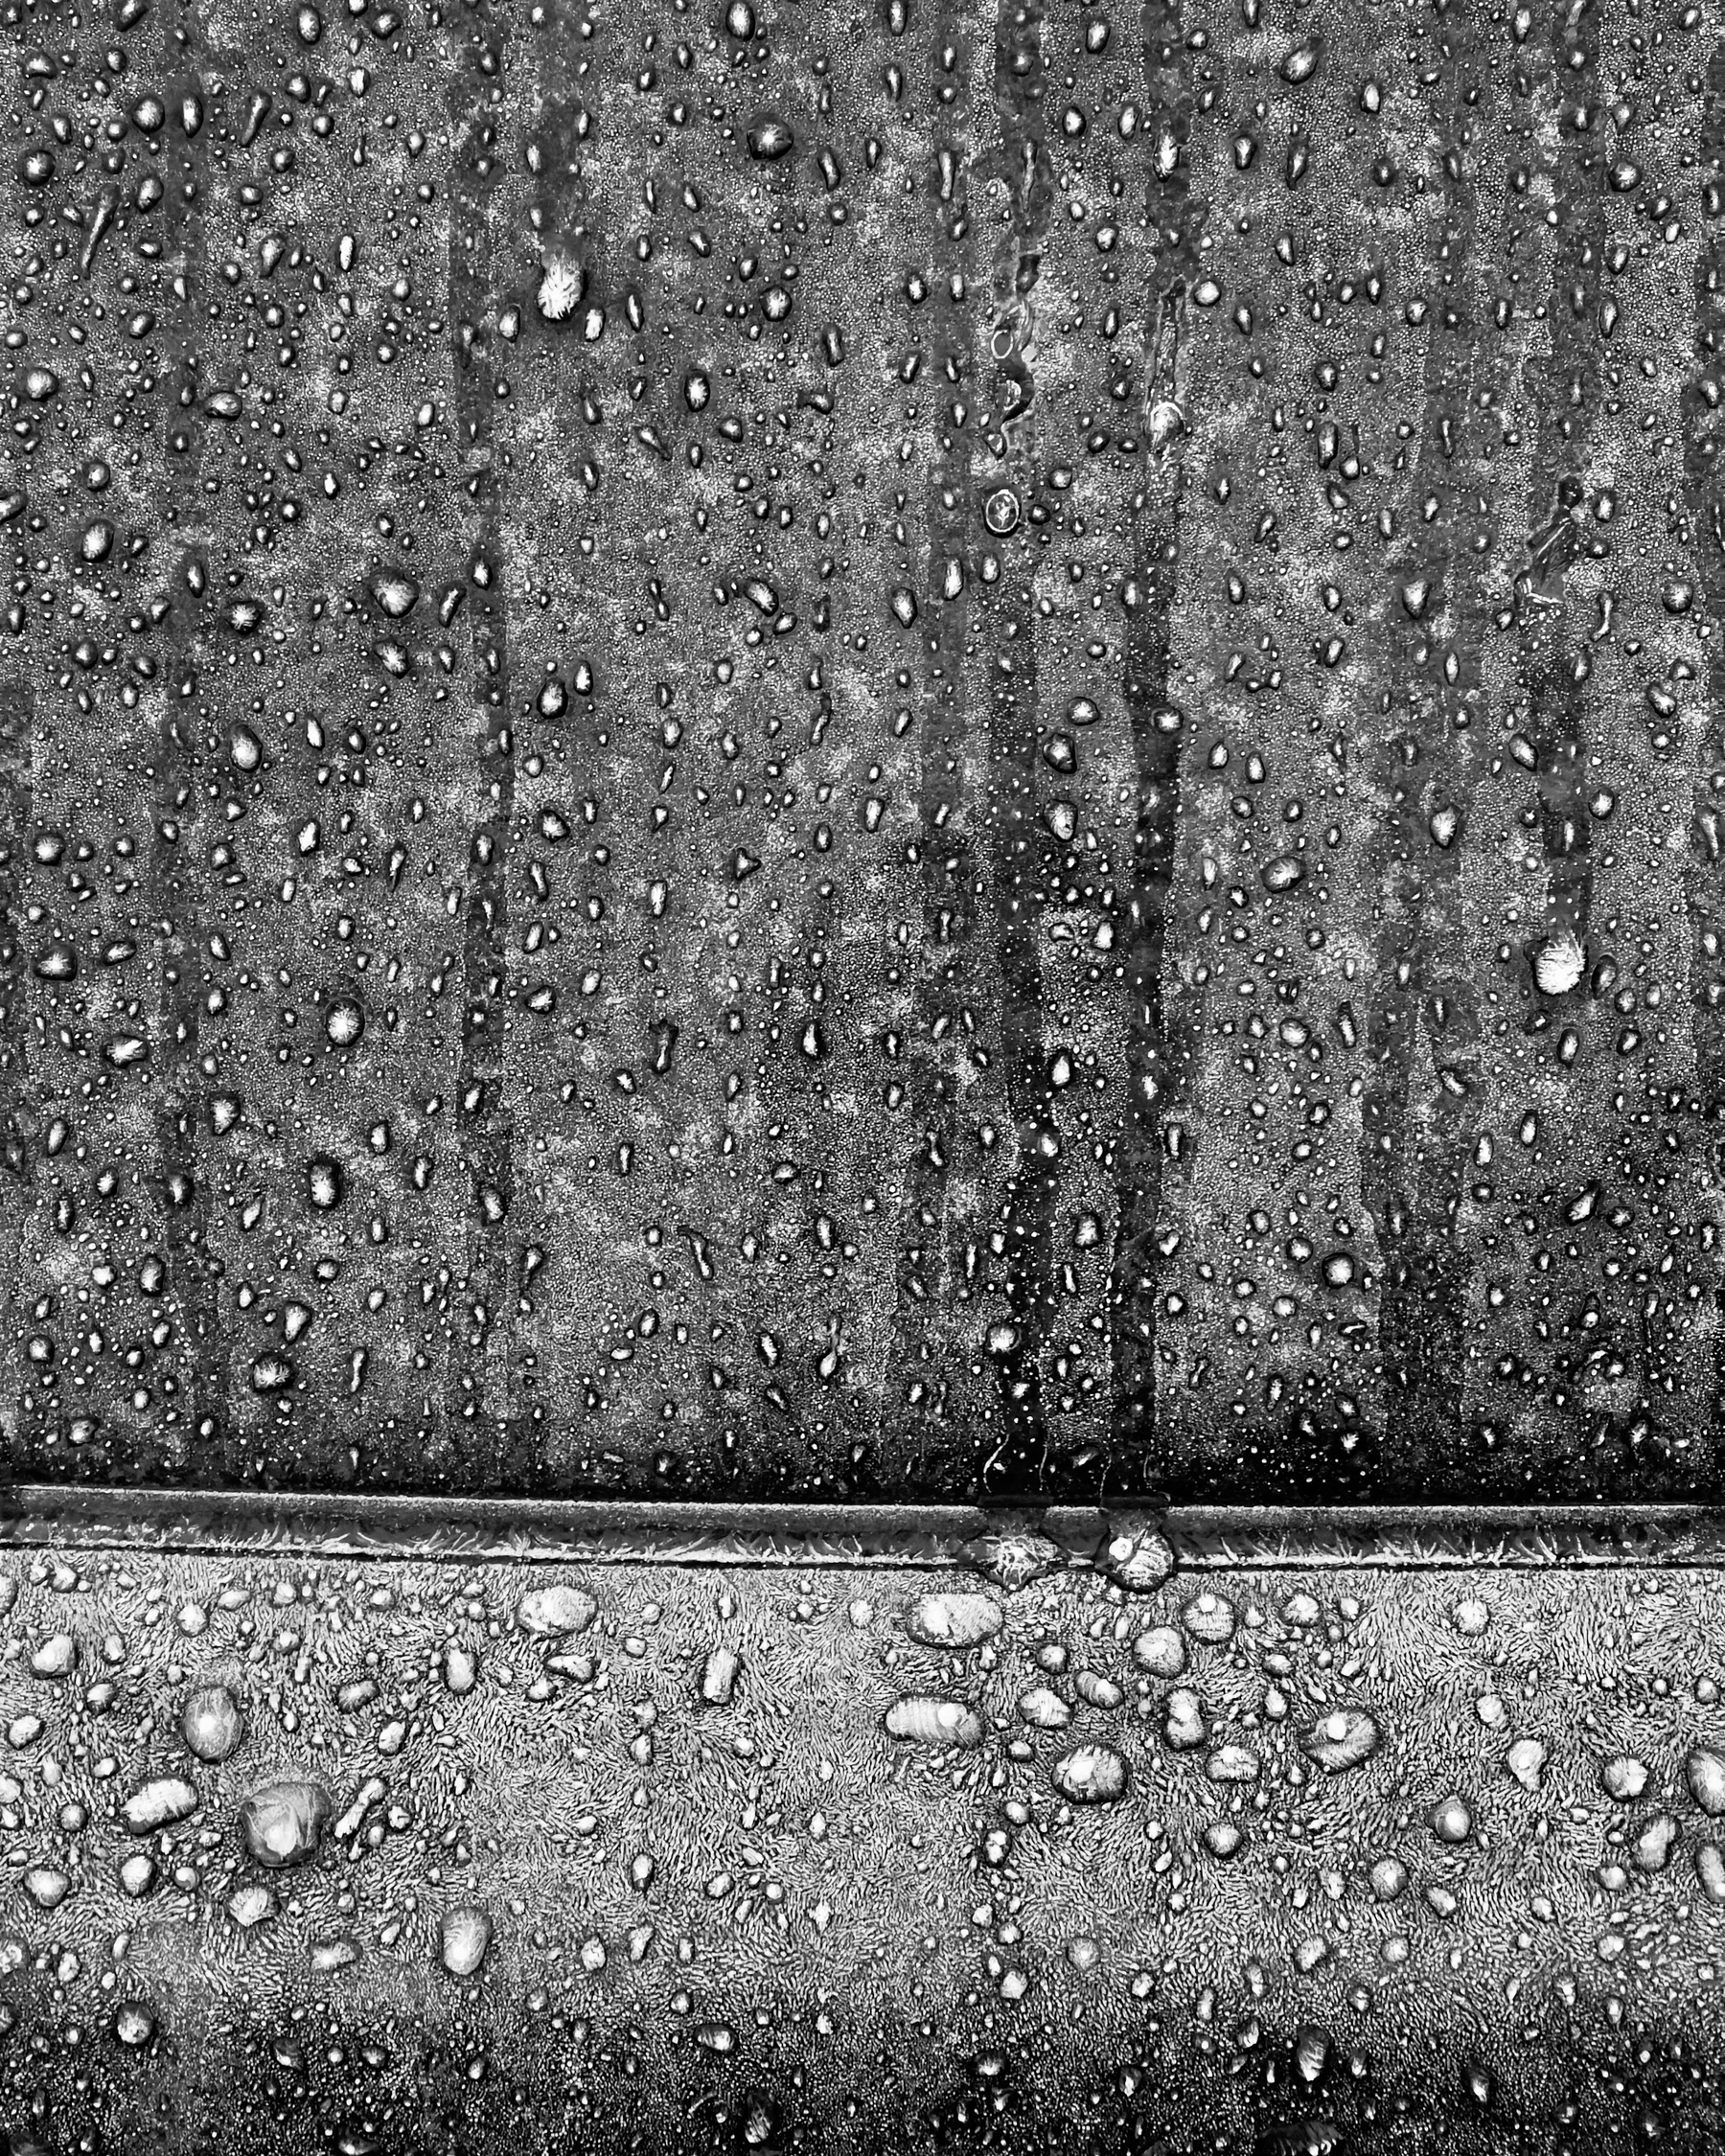 Frozen water droplets on car window.